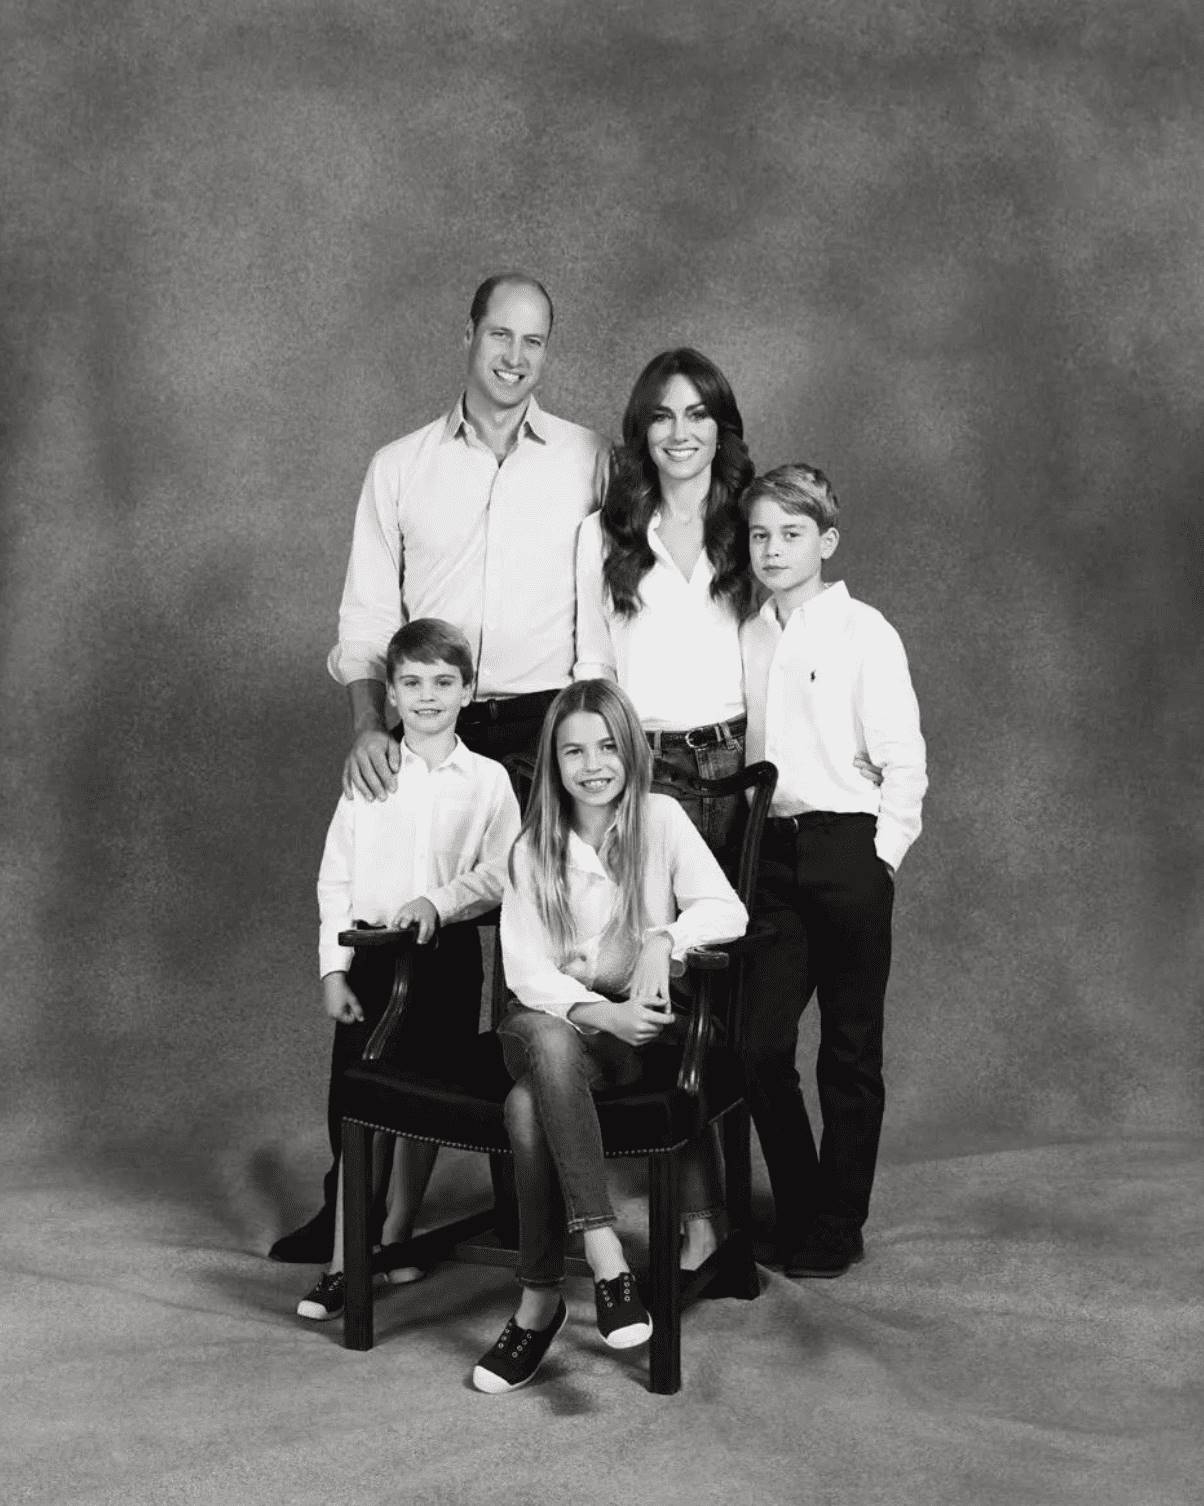 英國皇室在10日發布了兩張耶誕賀卡照片，分別是英國國王查爾斯三世（King Charles III）、王后卡蜜拉（Camilla）、以及威廉王子（Prince William）凱特王妃（Kate Middleton）一家五口的合影，而特別的是威廉凱特一家是以黑白照方式呈現，和以往不太一樣。